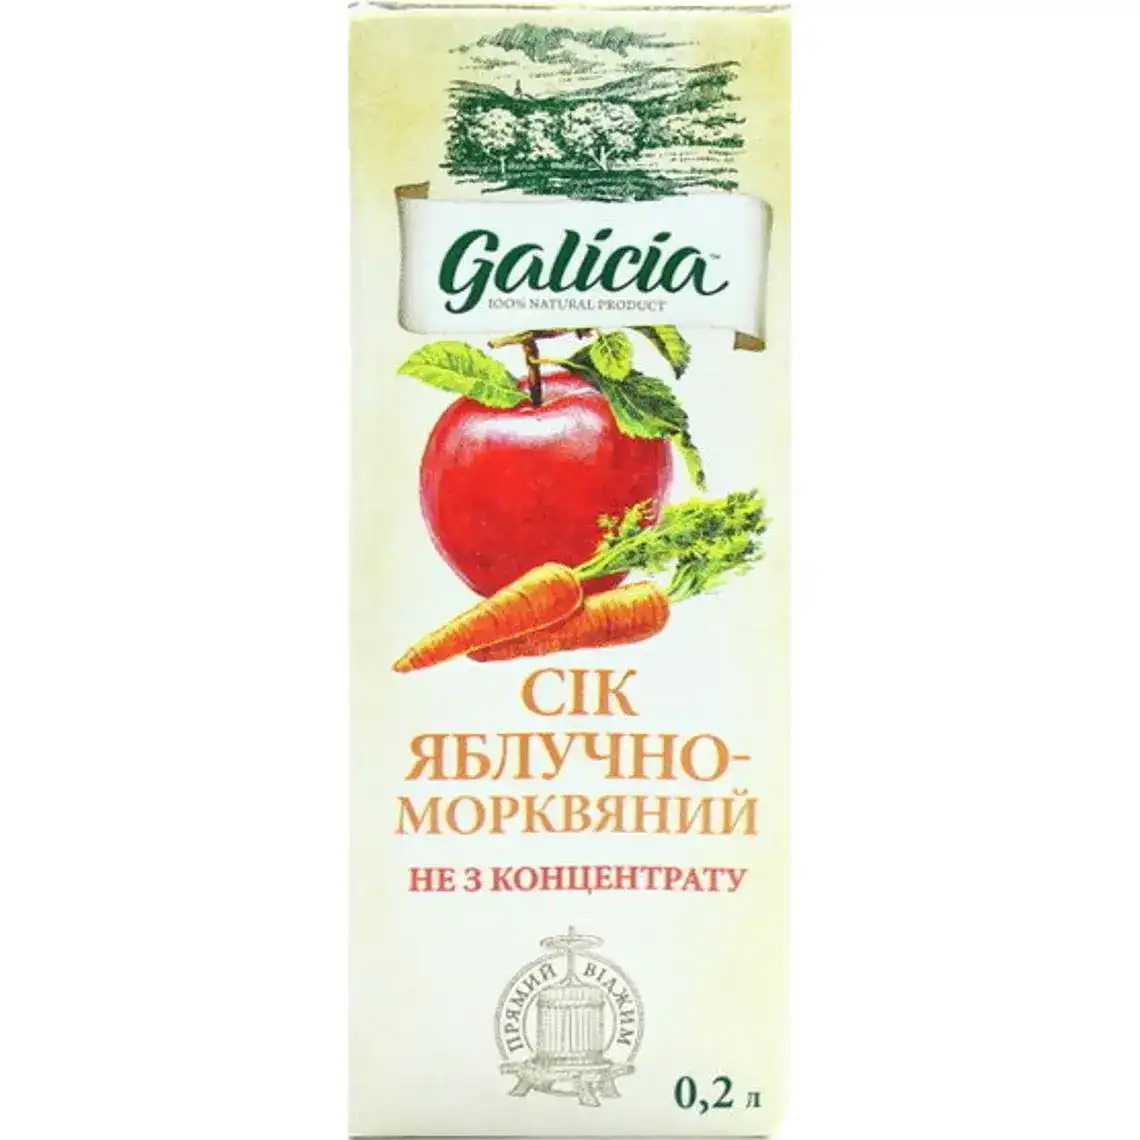 Сік Galicia яблучно-морквяний 200 мл